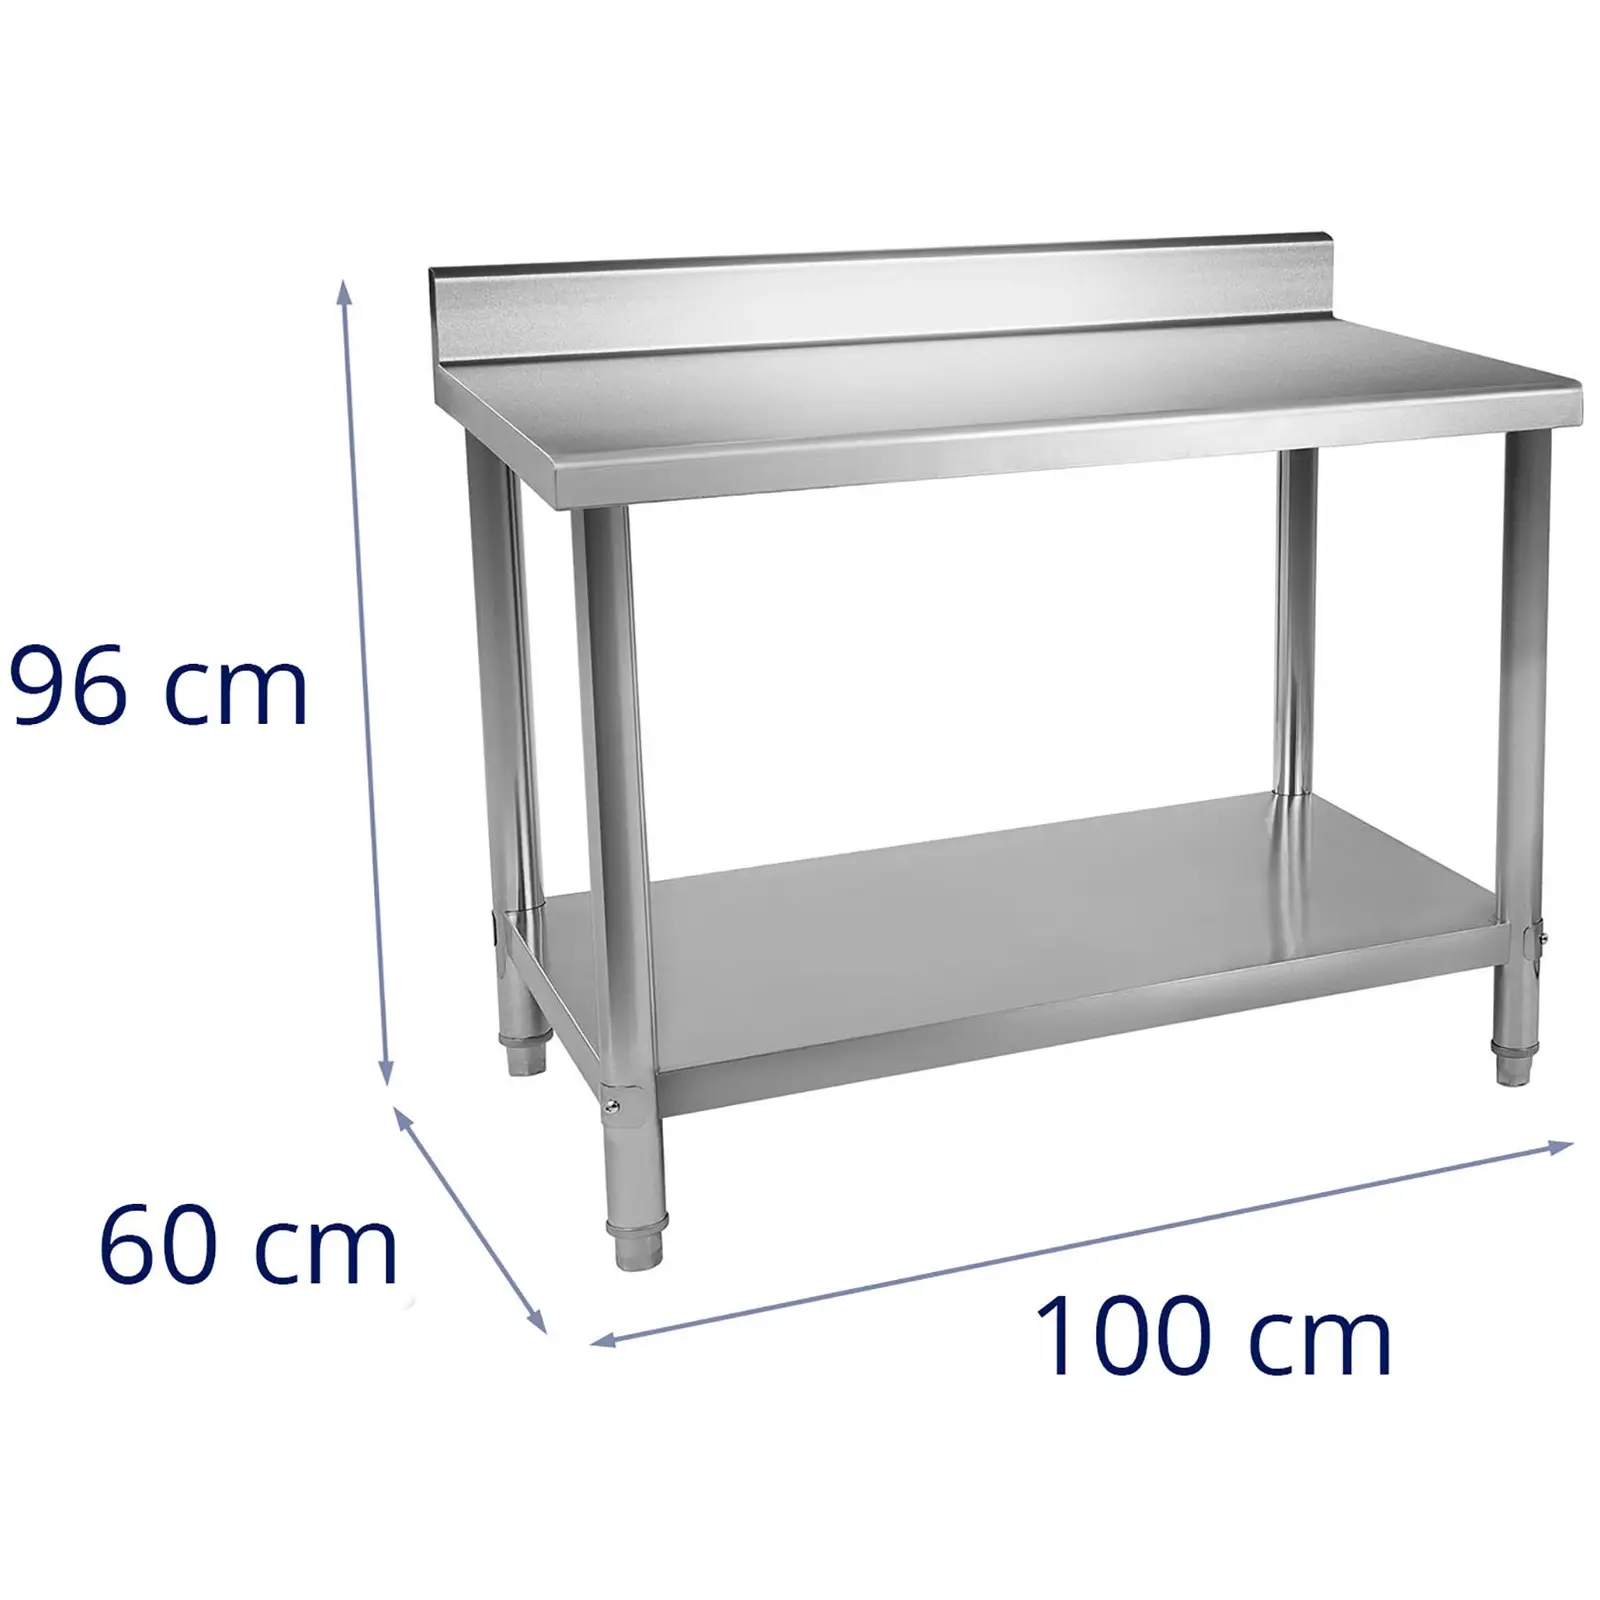 Tavolo inox - 100 x 60 cm - Con alzatina - capacità di 114 kg